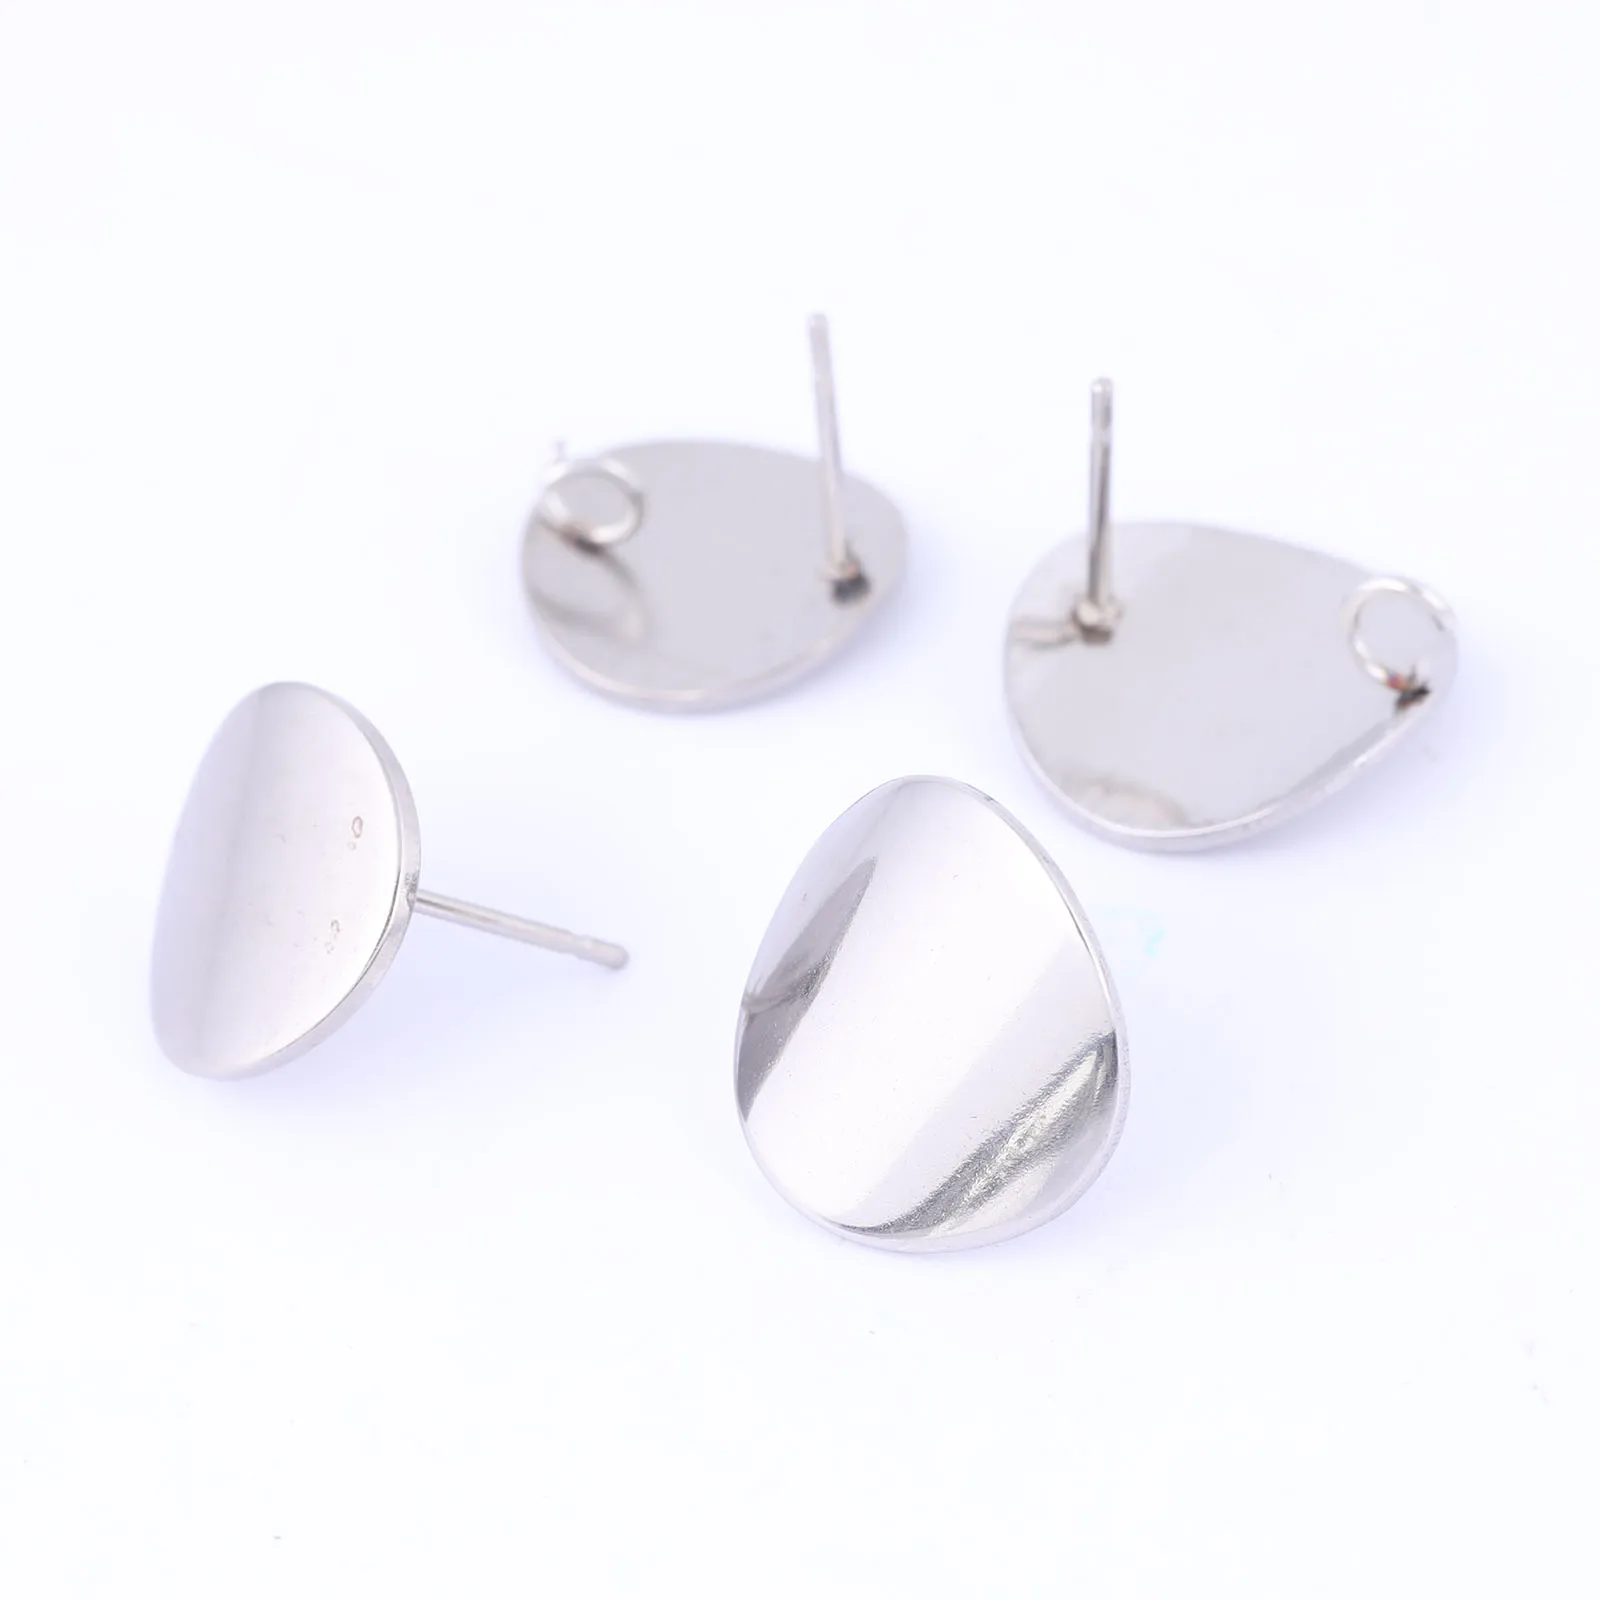 10Pcs Rvs Ronde Curve Pad Earring Berichten Studs Diy Oorbellen Connector Bevindingen Voor Sieraden Maken Levert